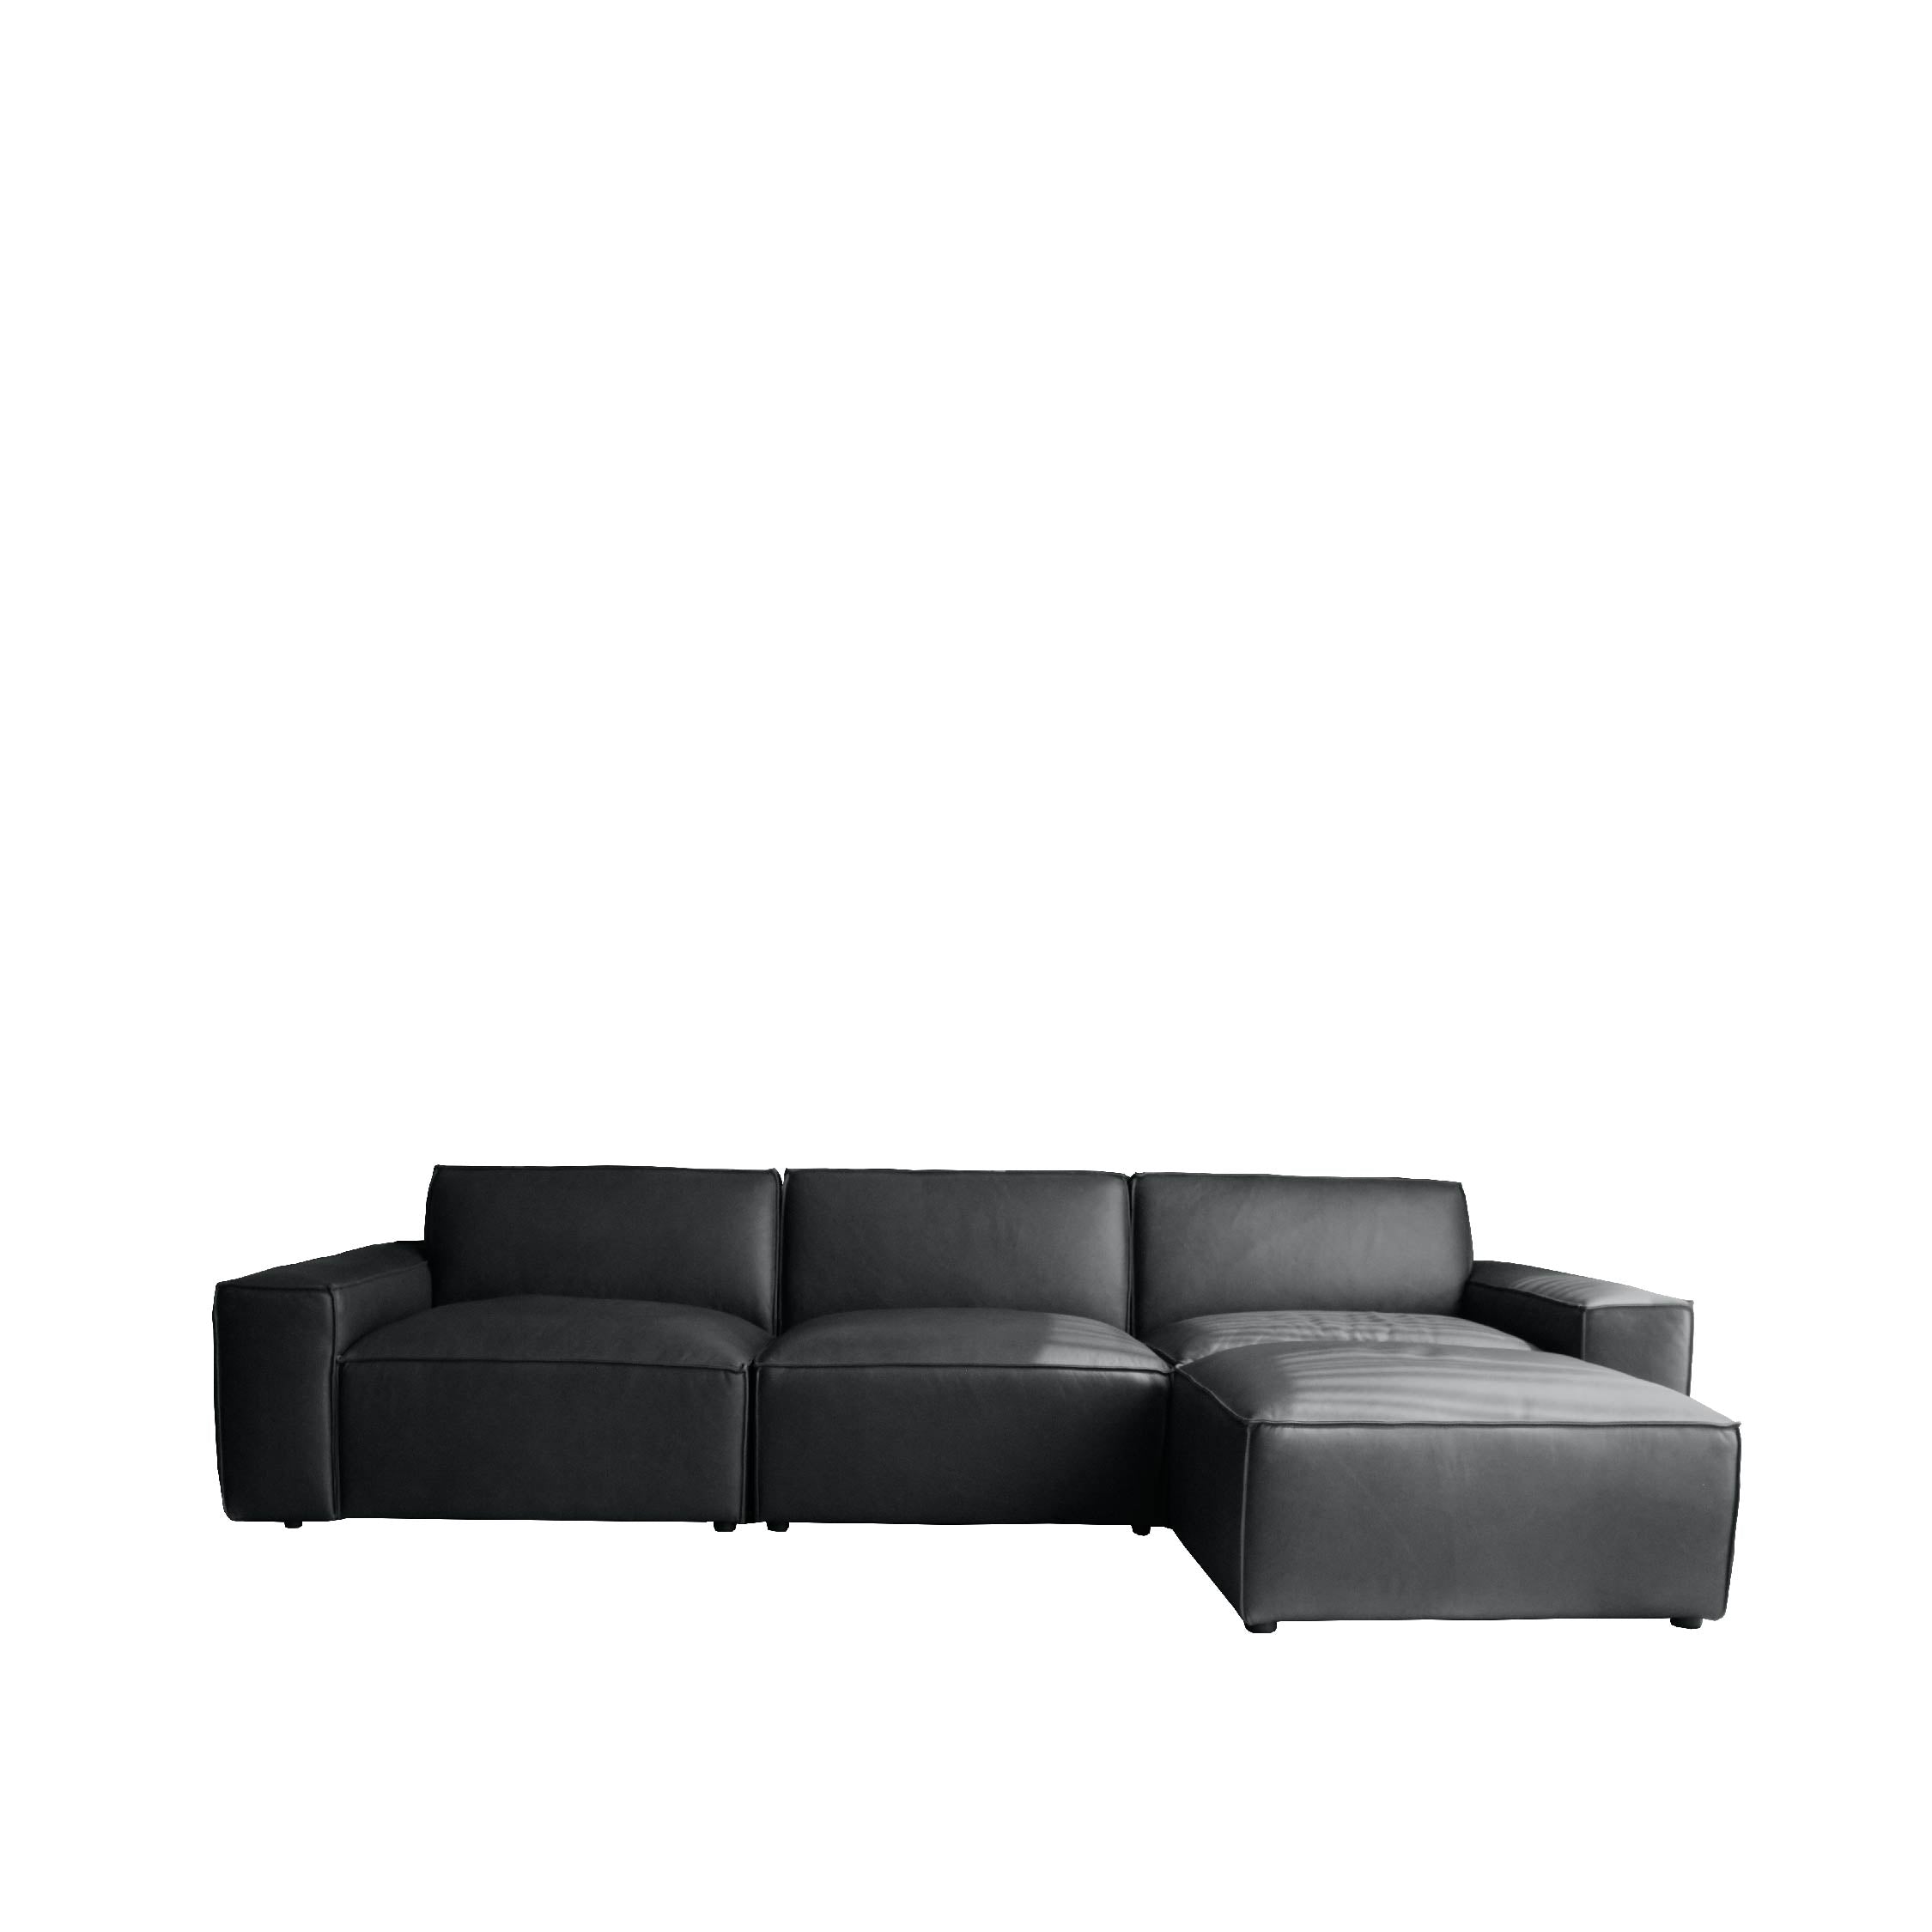 ESSIMETRI Sofa 4 Seater with Ottoman (Leather)